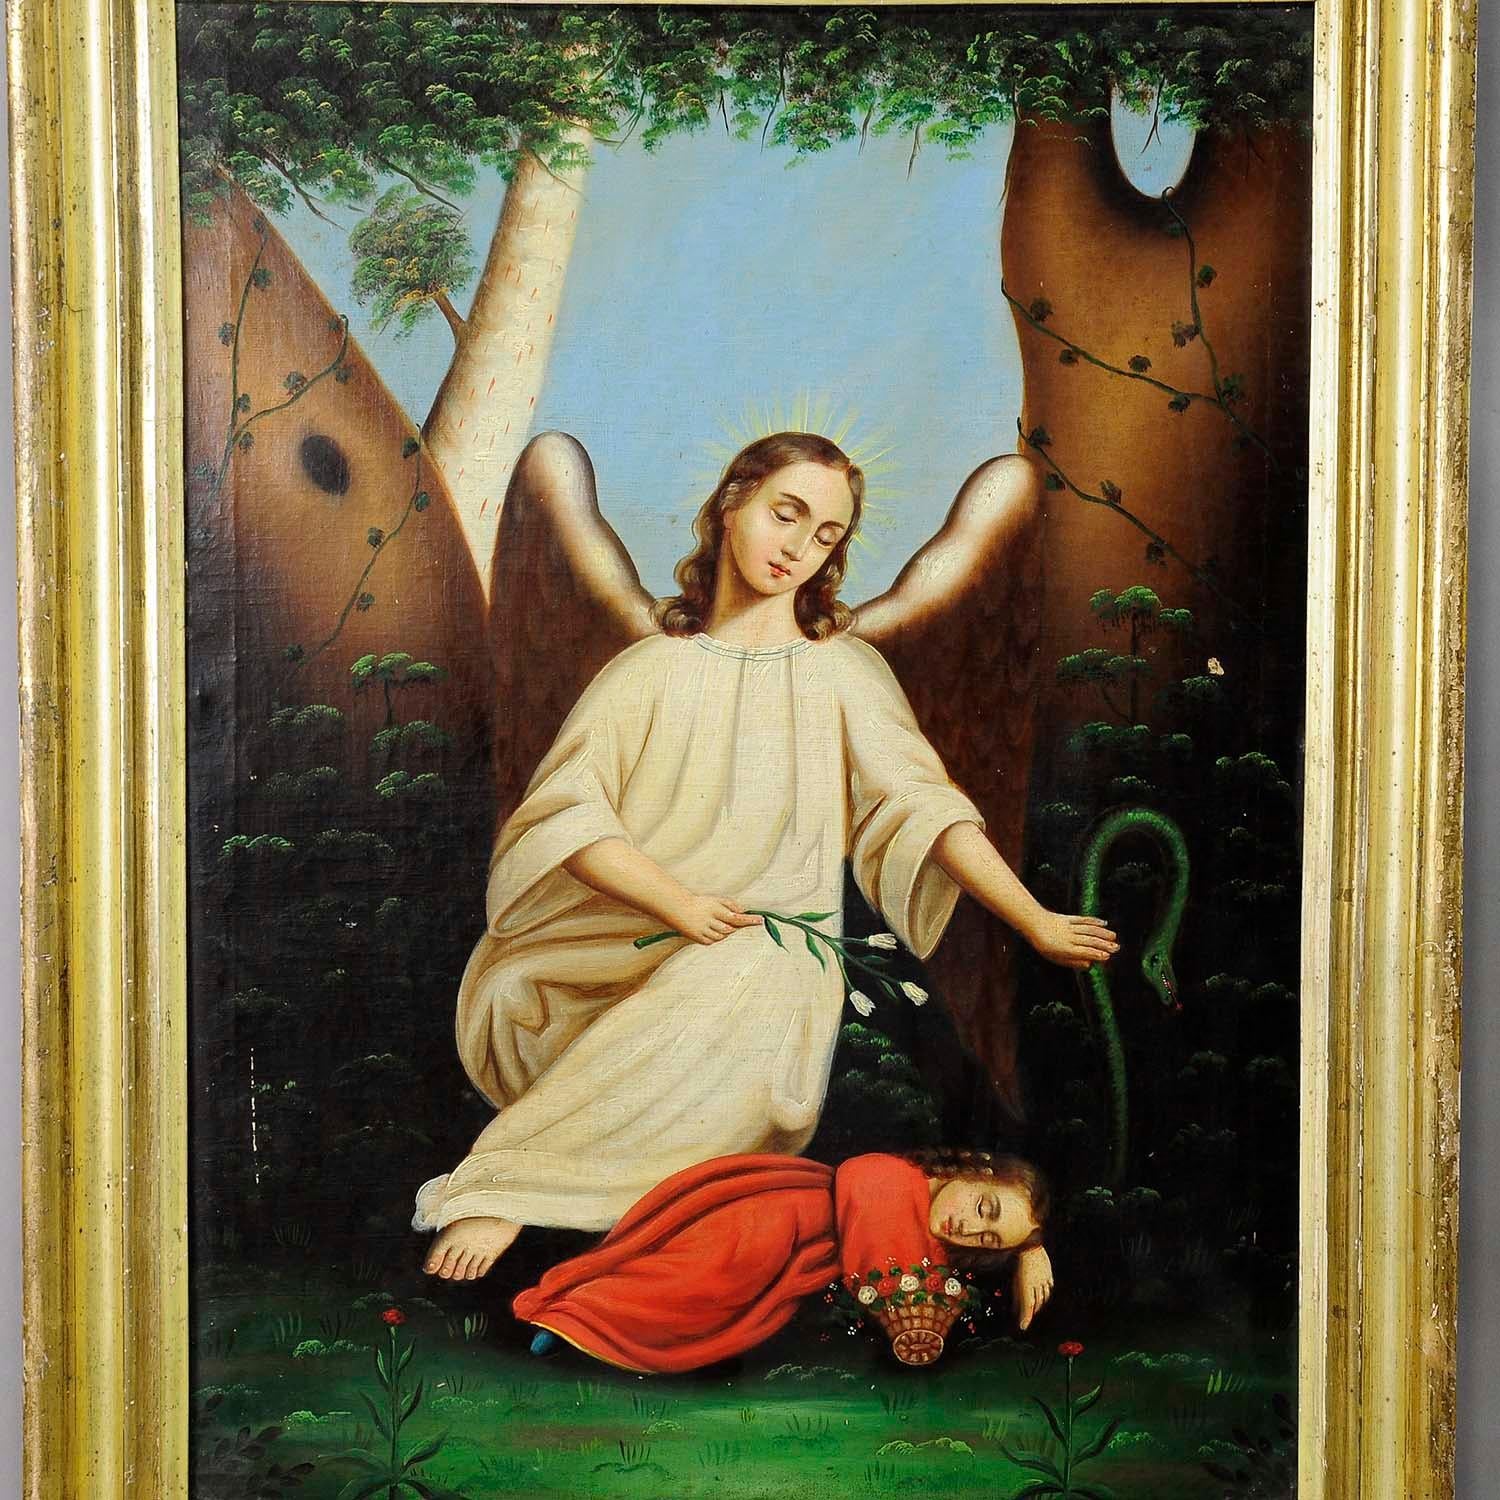 Une grande peinture à l'huile angélique représentant un ange protégeant un enfant endormi d'un serpent. Peinture à l'huile sur toile avec des couleurs pastel vigoureuses. Encadré avec un cadre doré décoratif antique. Non signé, Allemagne, début du